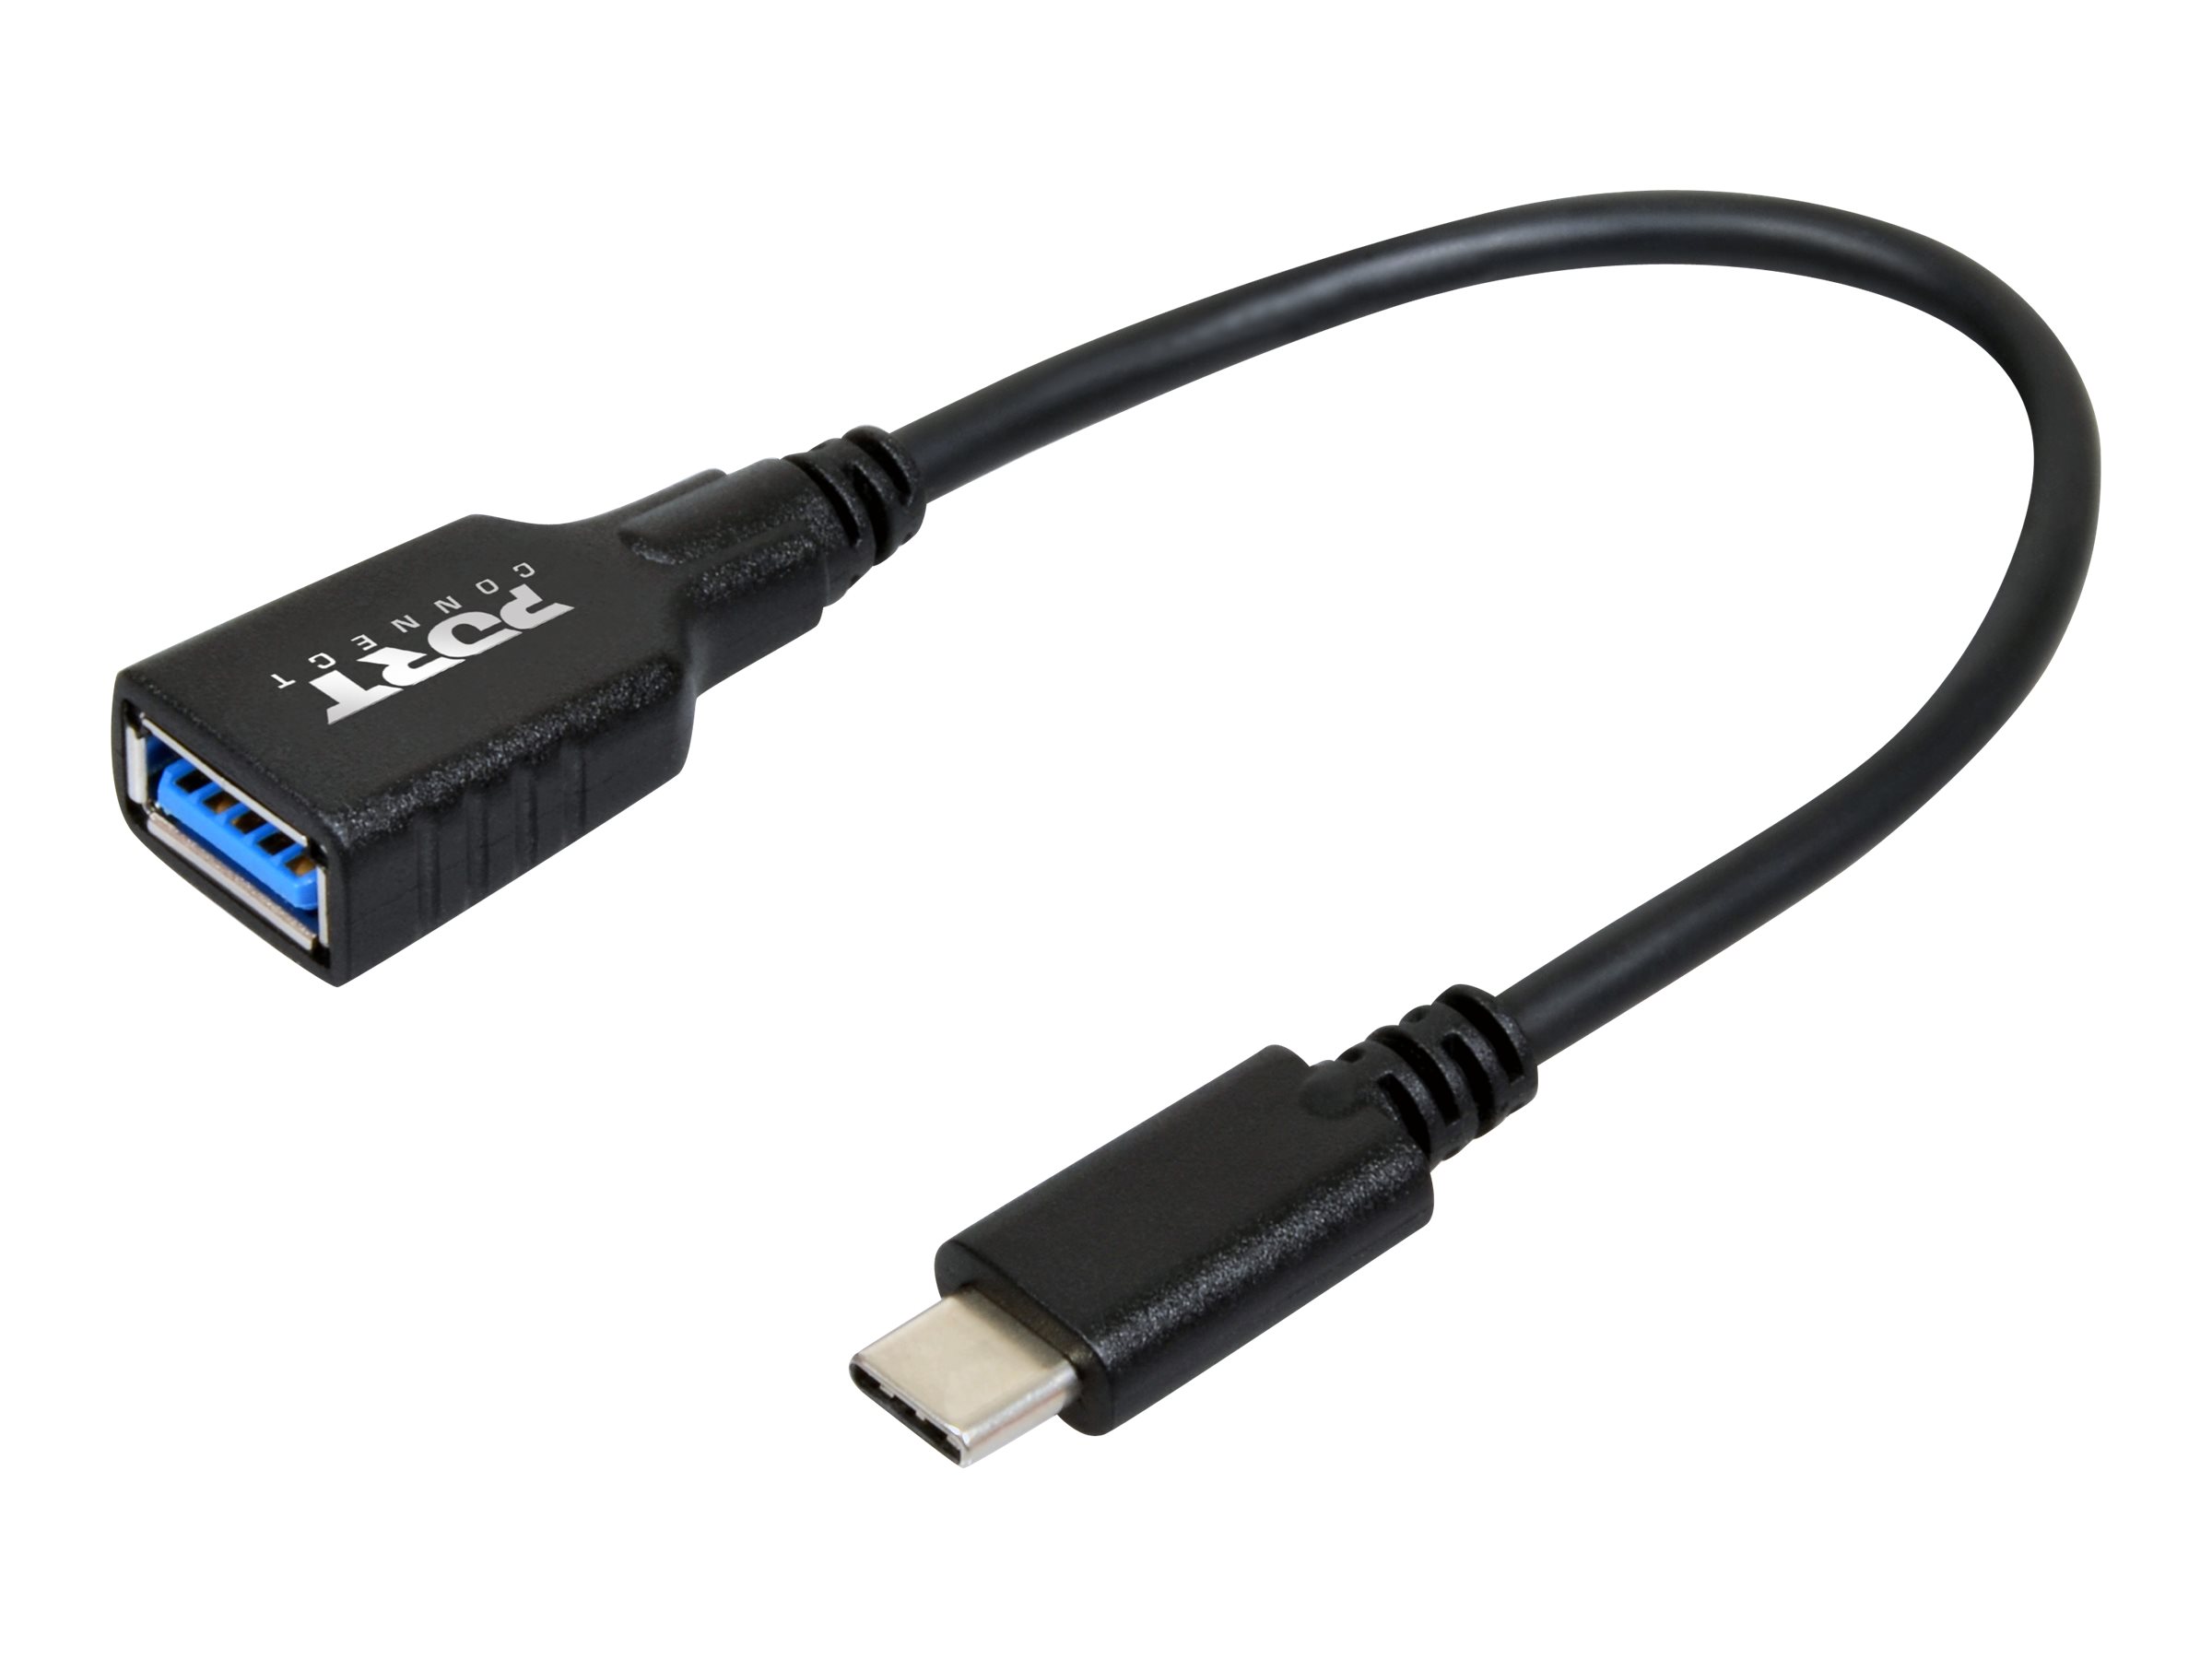 PORT Connect - USB-Adapter - USB Typ A (W) zu 24 pin USB-C (M) - USB 3.0 - 15 cm